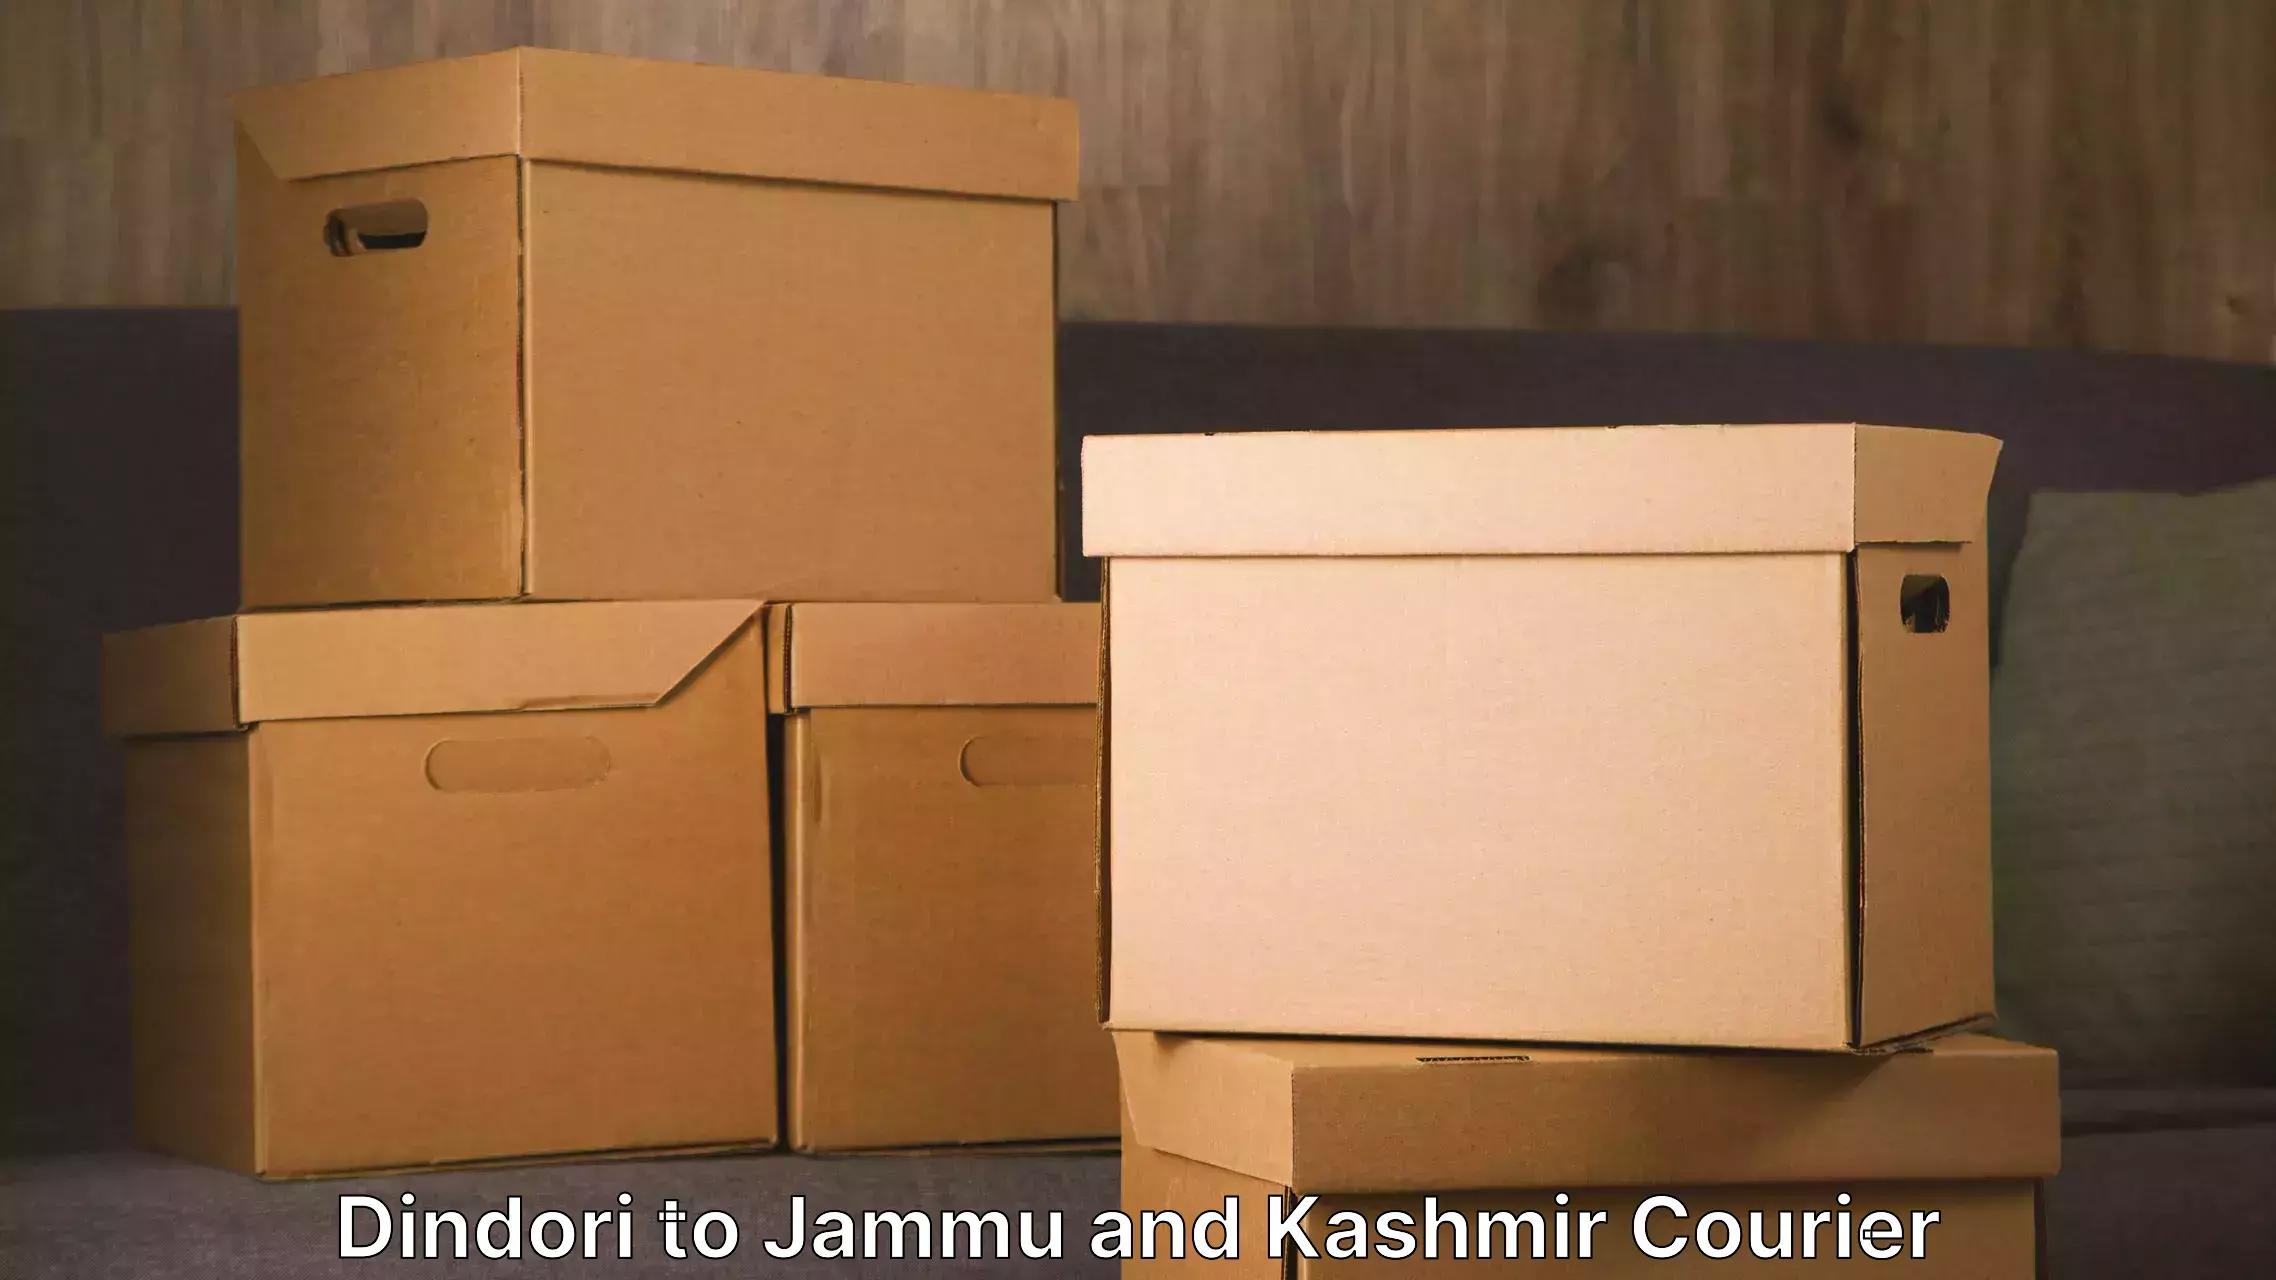 Furniture transport experts Dindori to Jammu and Kashmir